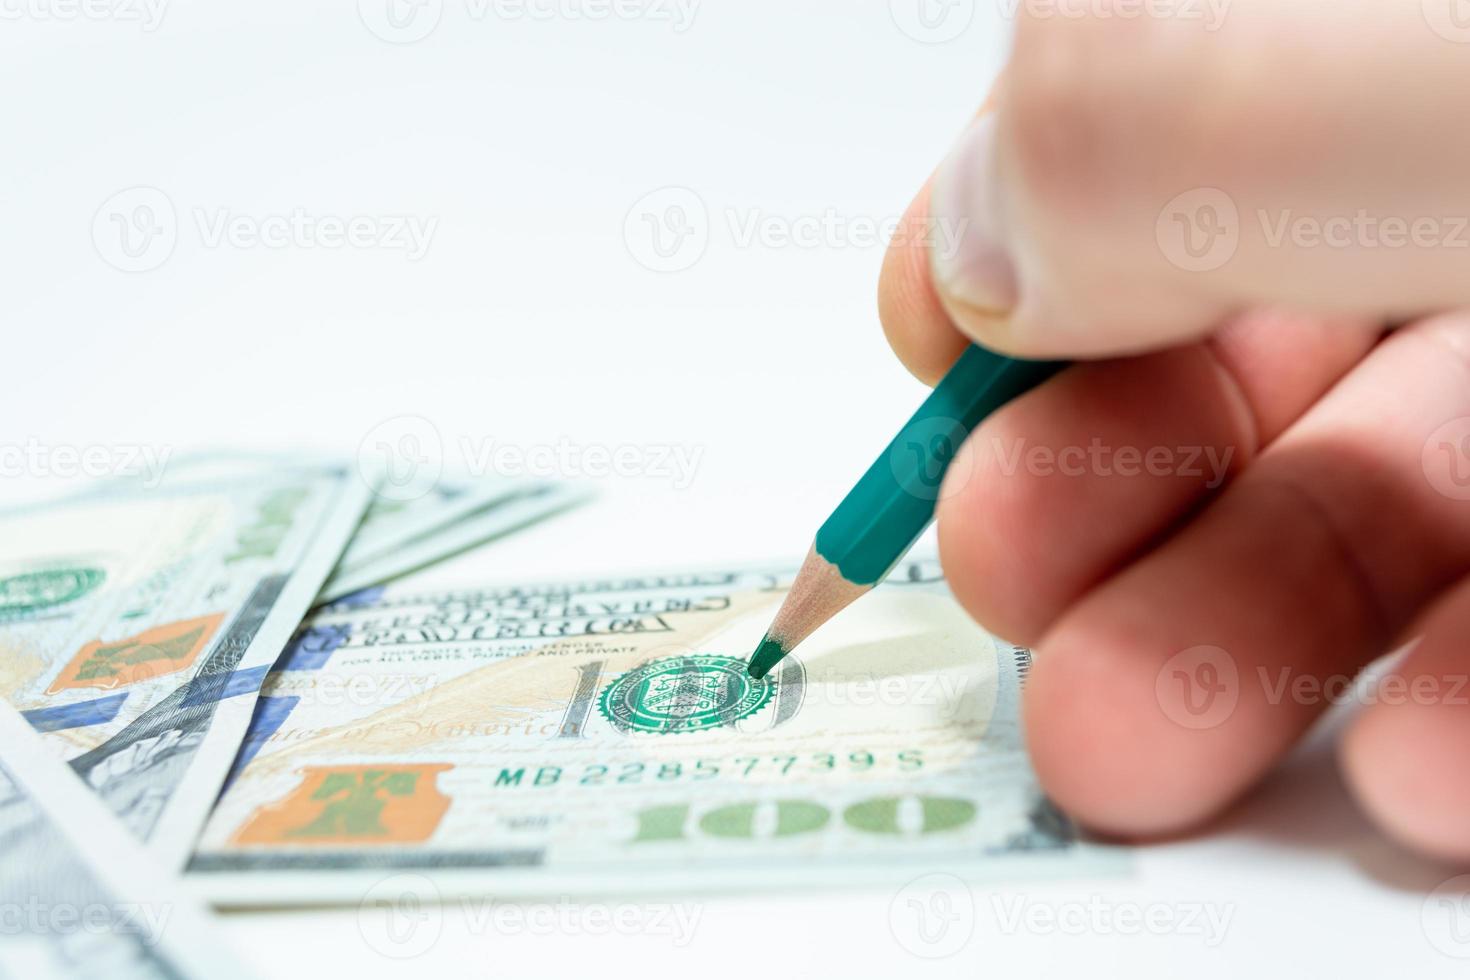 retirer de l'argent. un coup dans la main tient un crayon sur un billet de cent dollars. photo